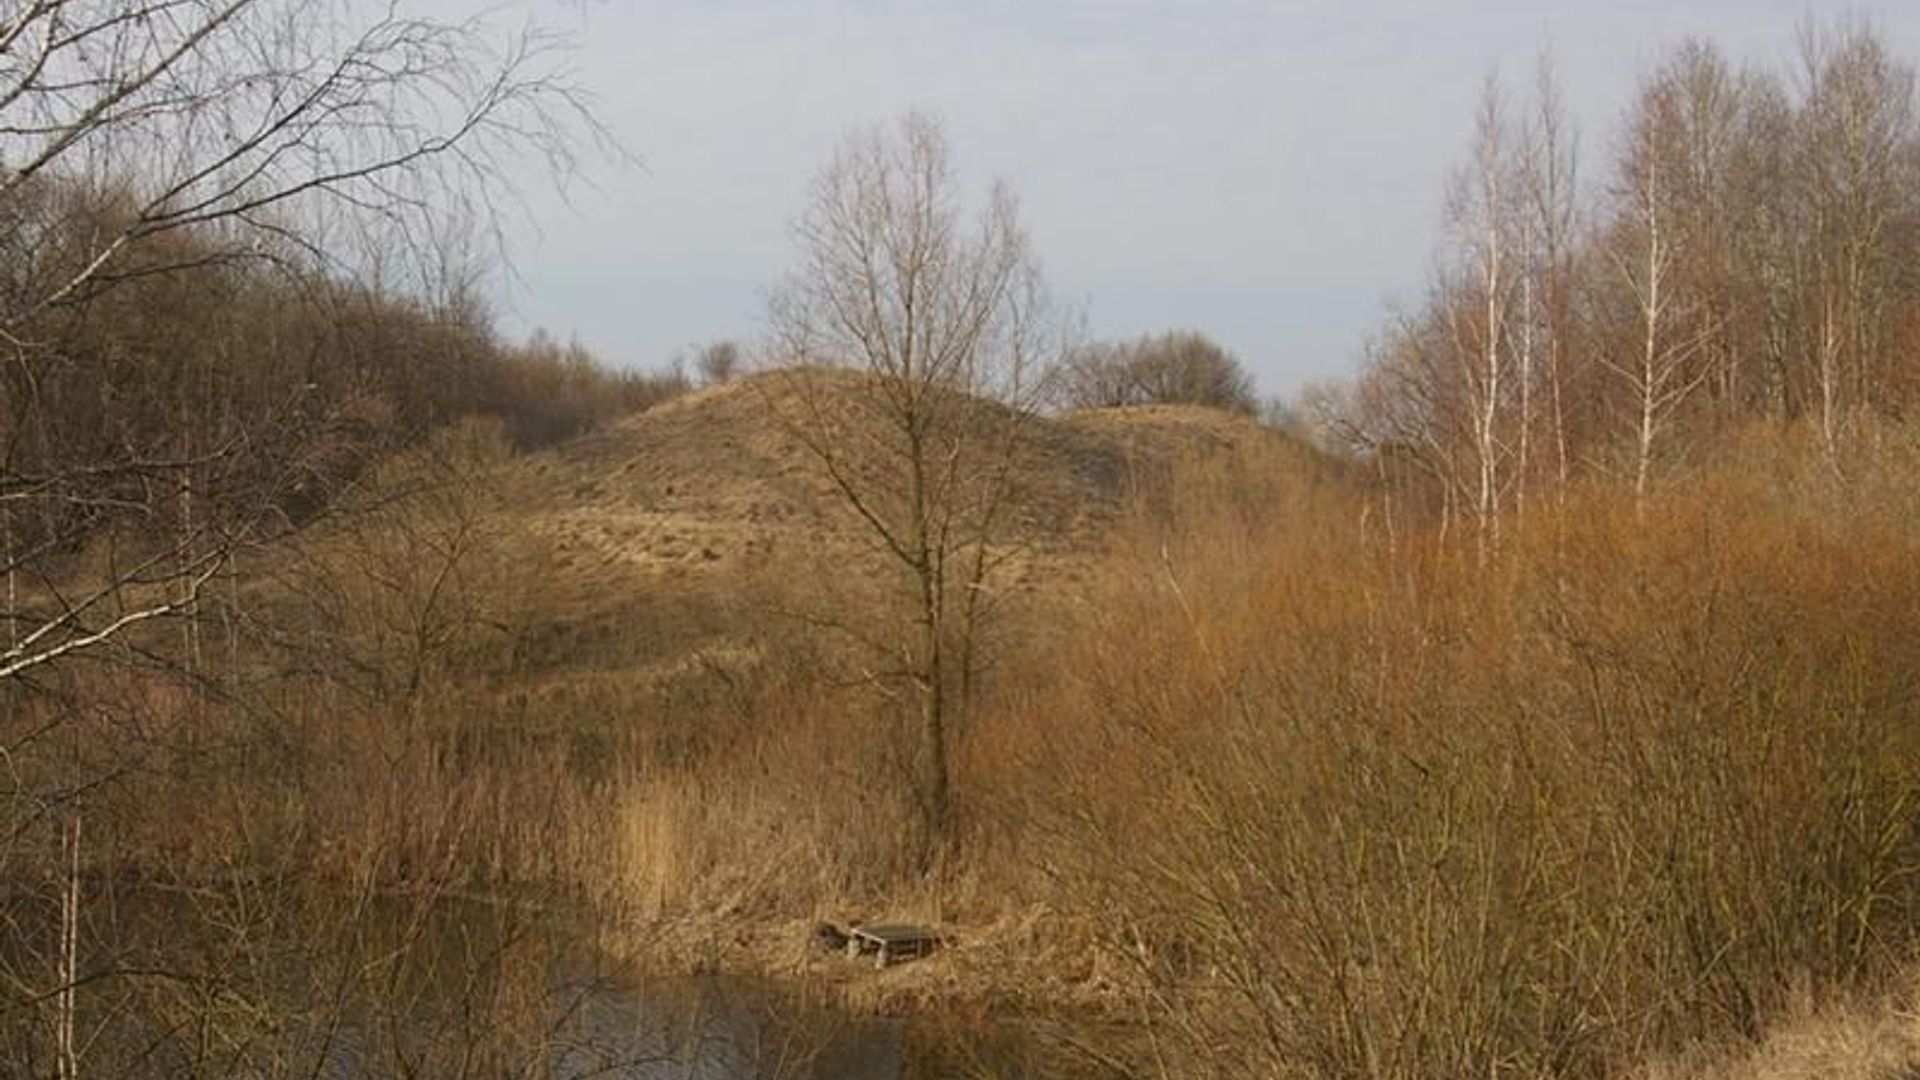 Sangailai Mound